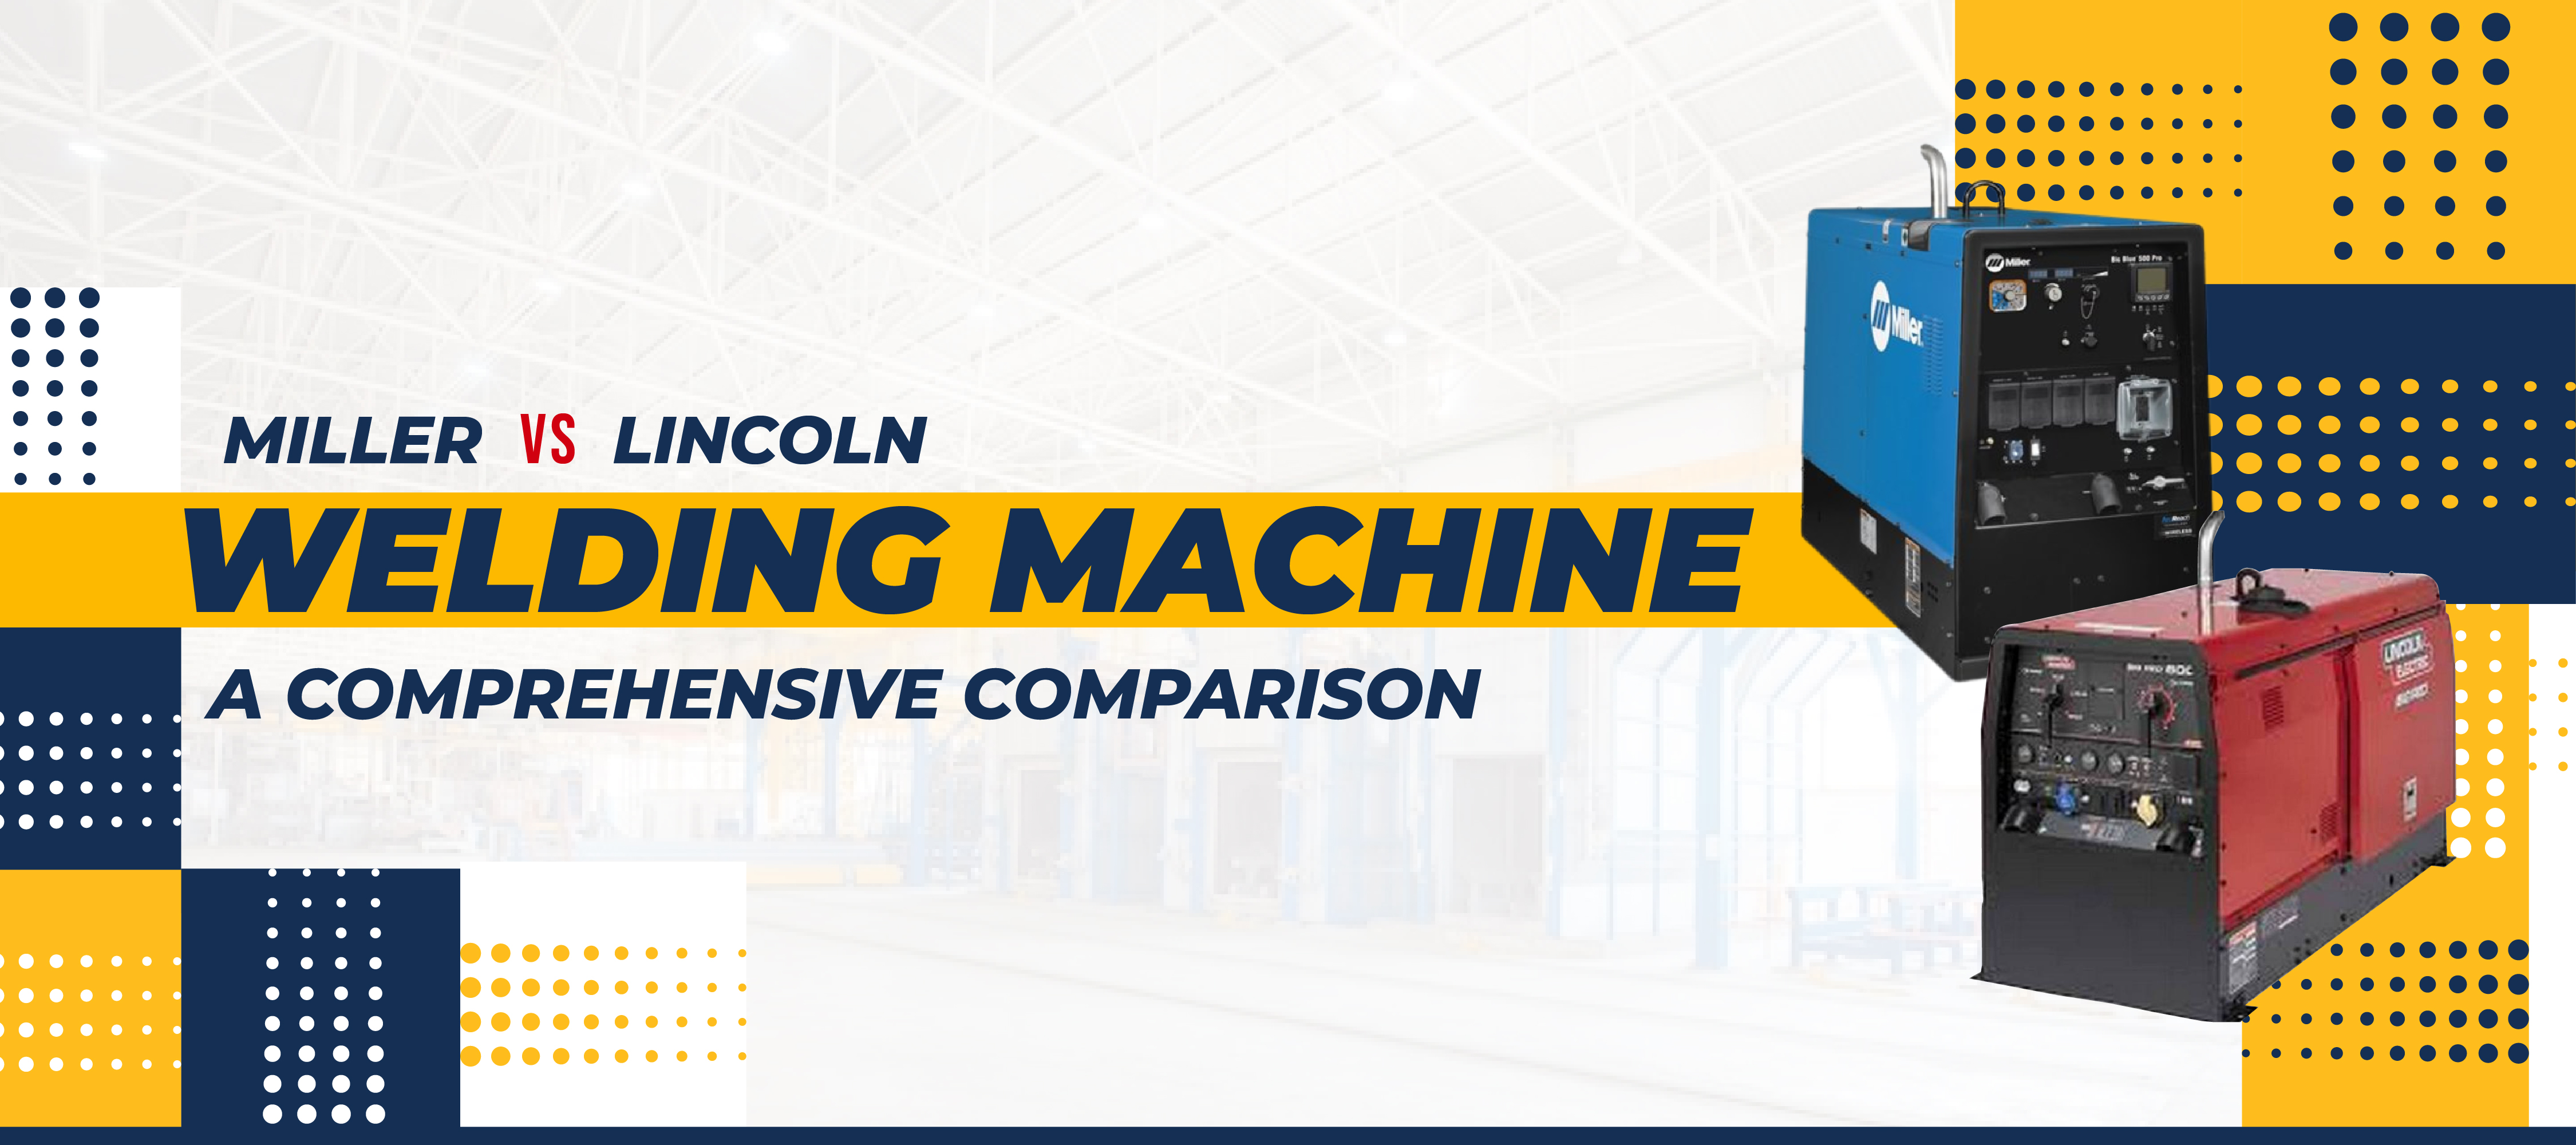 Miller_vs_Lincoln_Welding_Machine-1.jpg